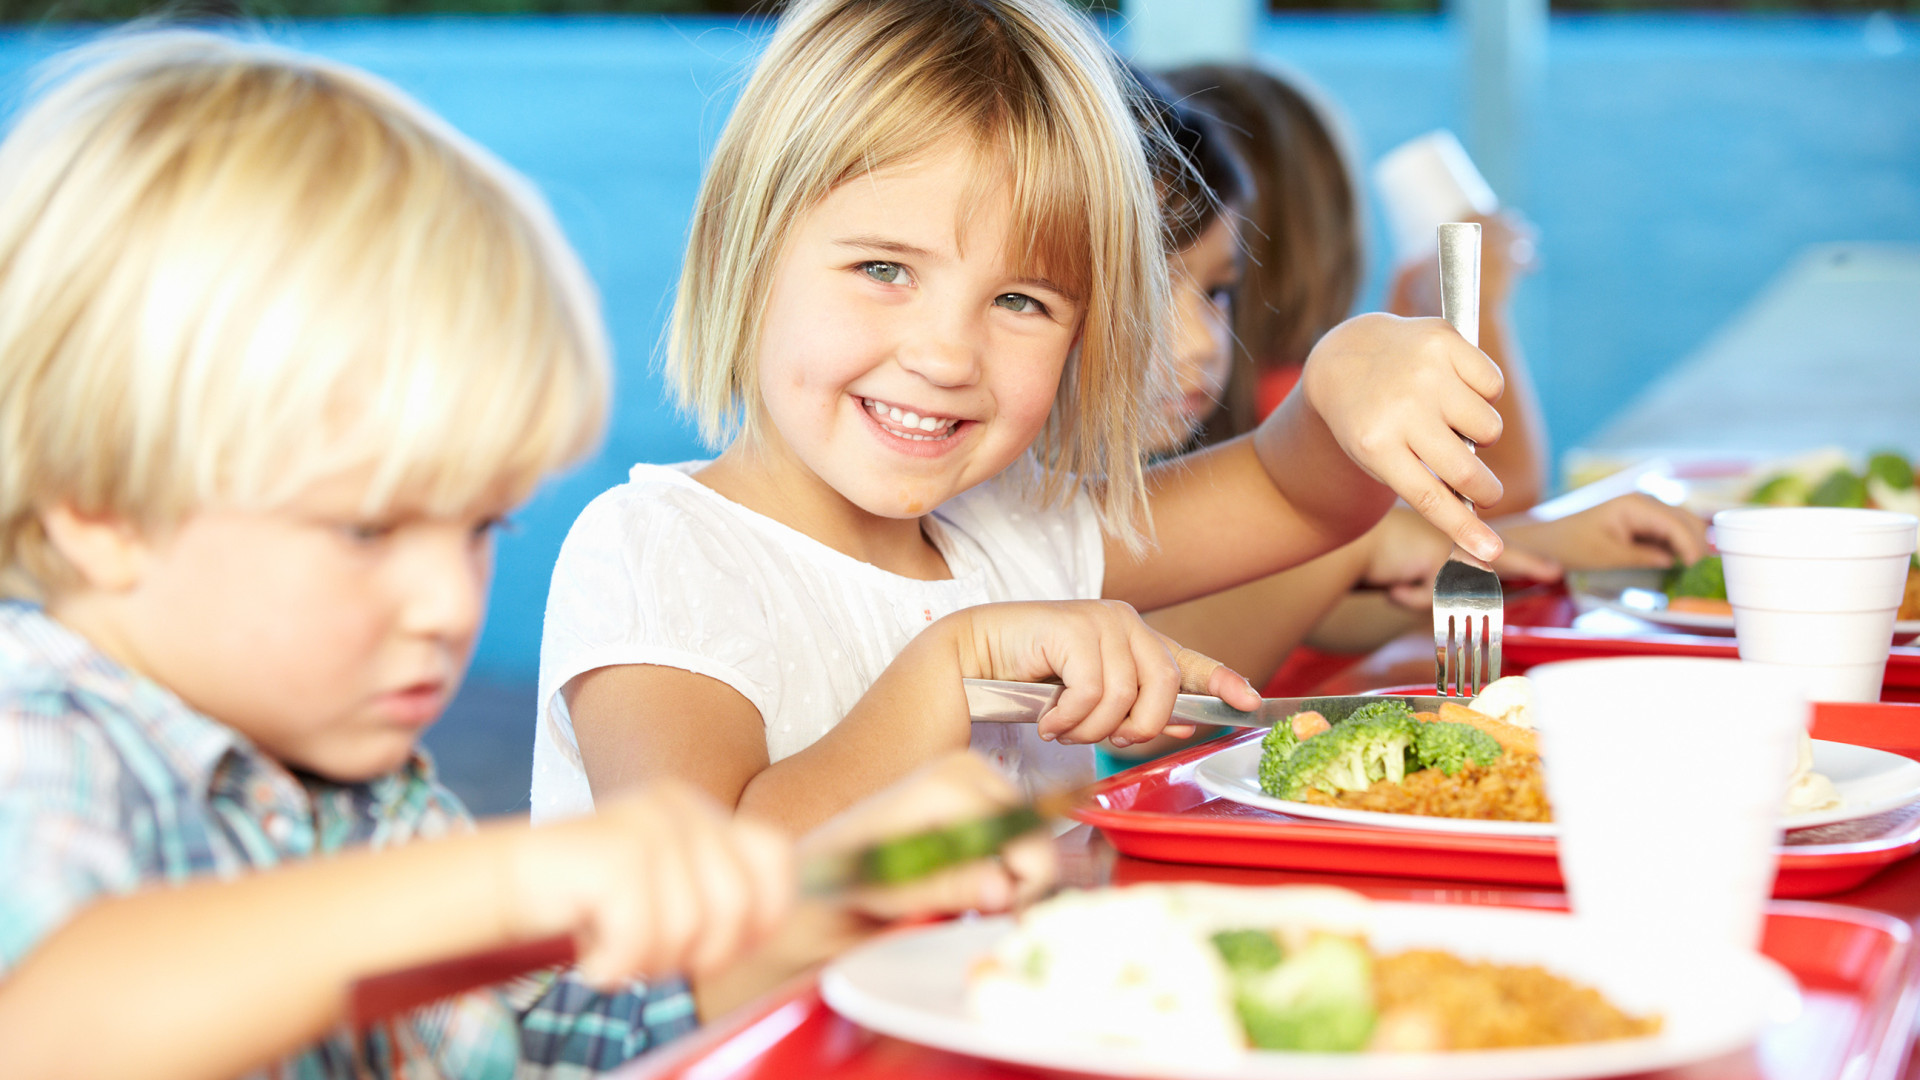 Atbalstot vecākus, pašvaldība līdz 31. augustam līdzfinansēs ēdināšanas pakalpojuma maksu pirmsskolas izglītības iestādēs